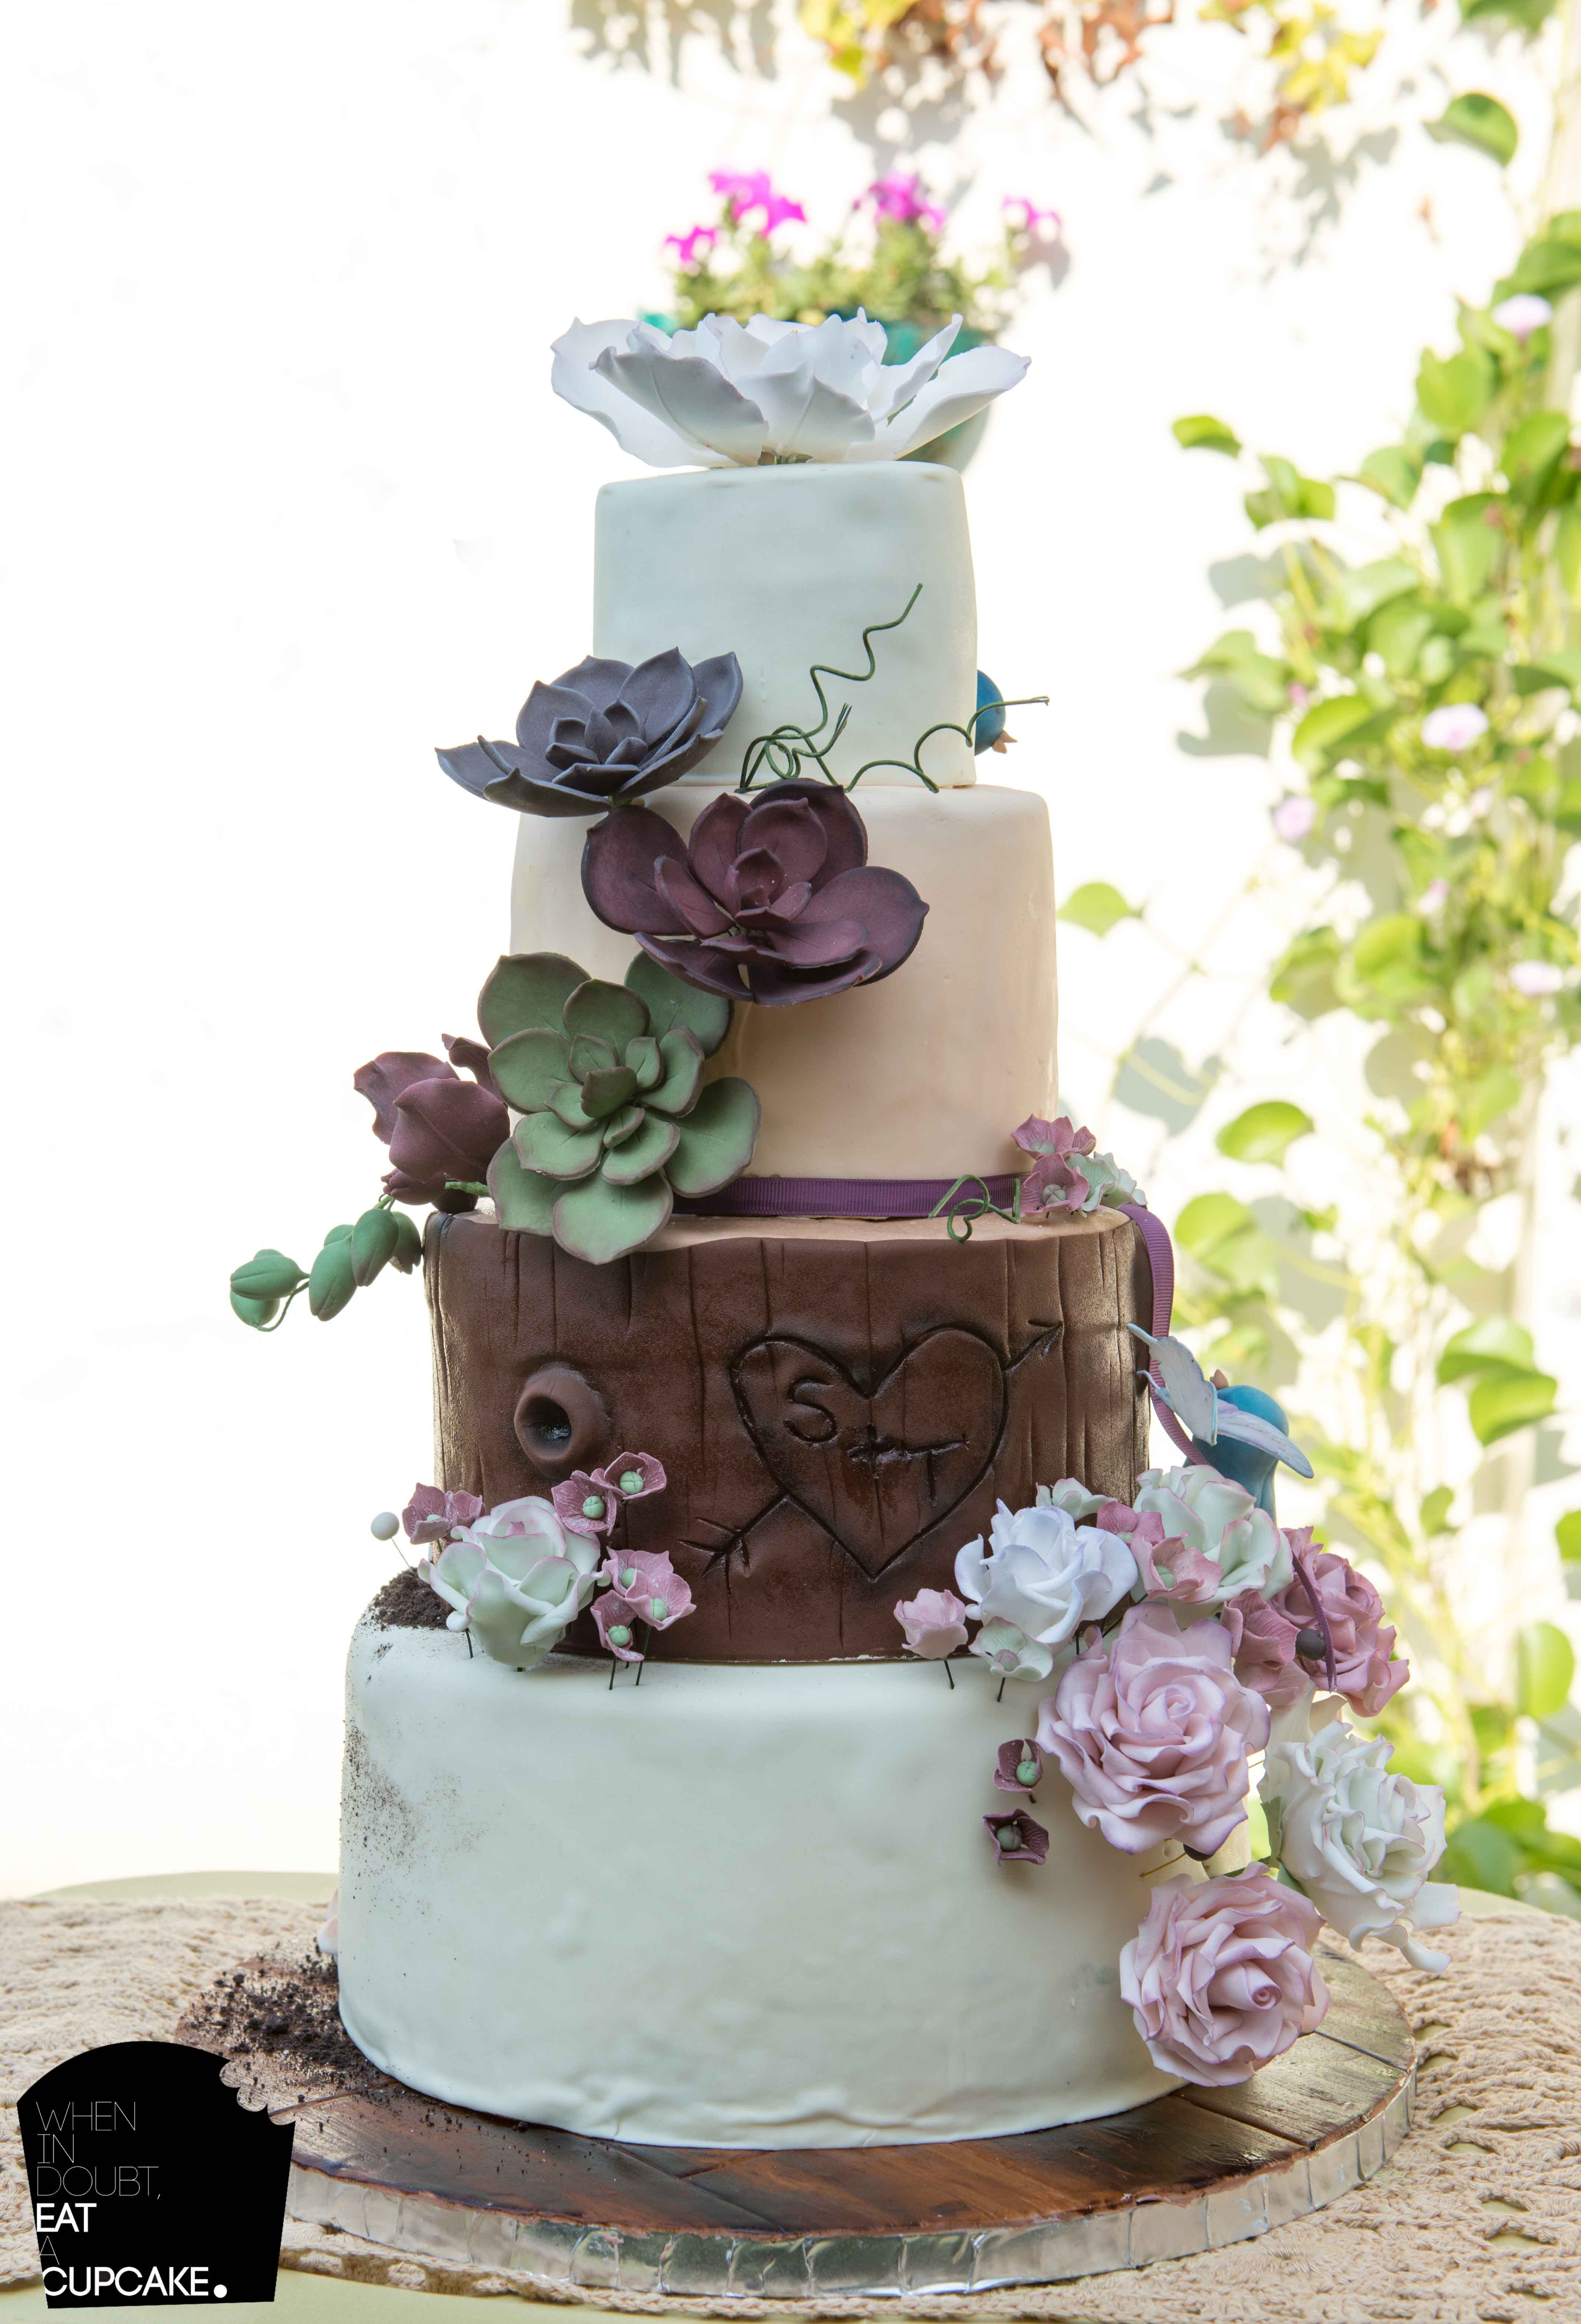 Wedding Cakes Themes
 Woodland Theme Wedding Cake CakeCentral